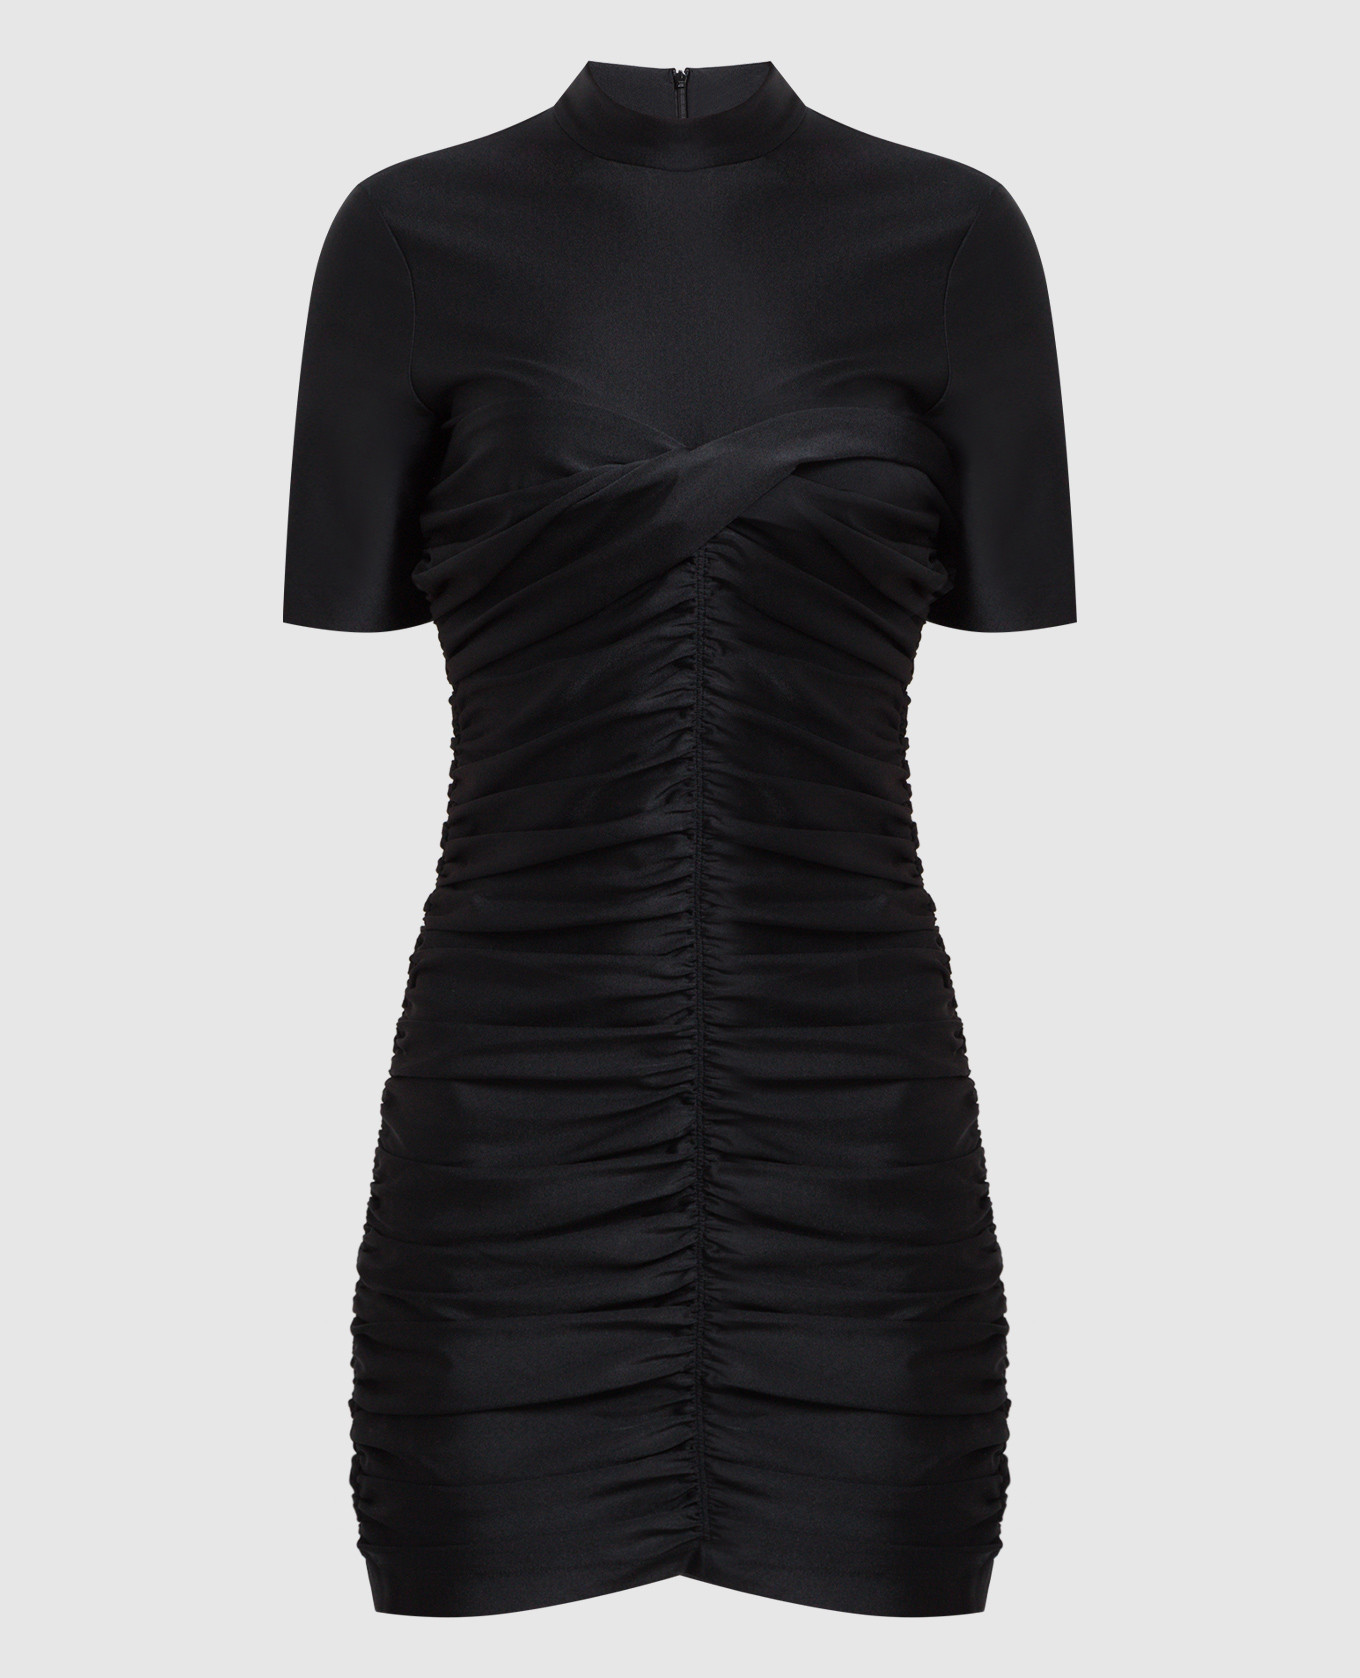 Черное платье мини с драпировкой